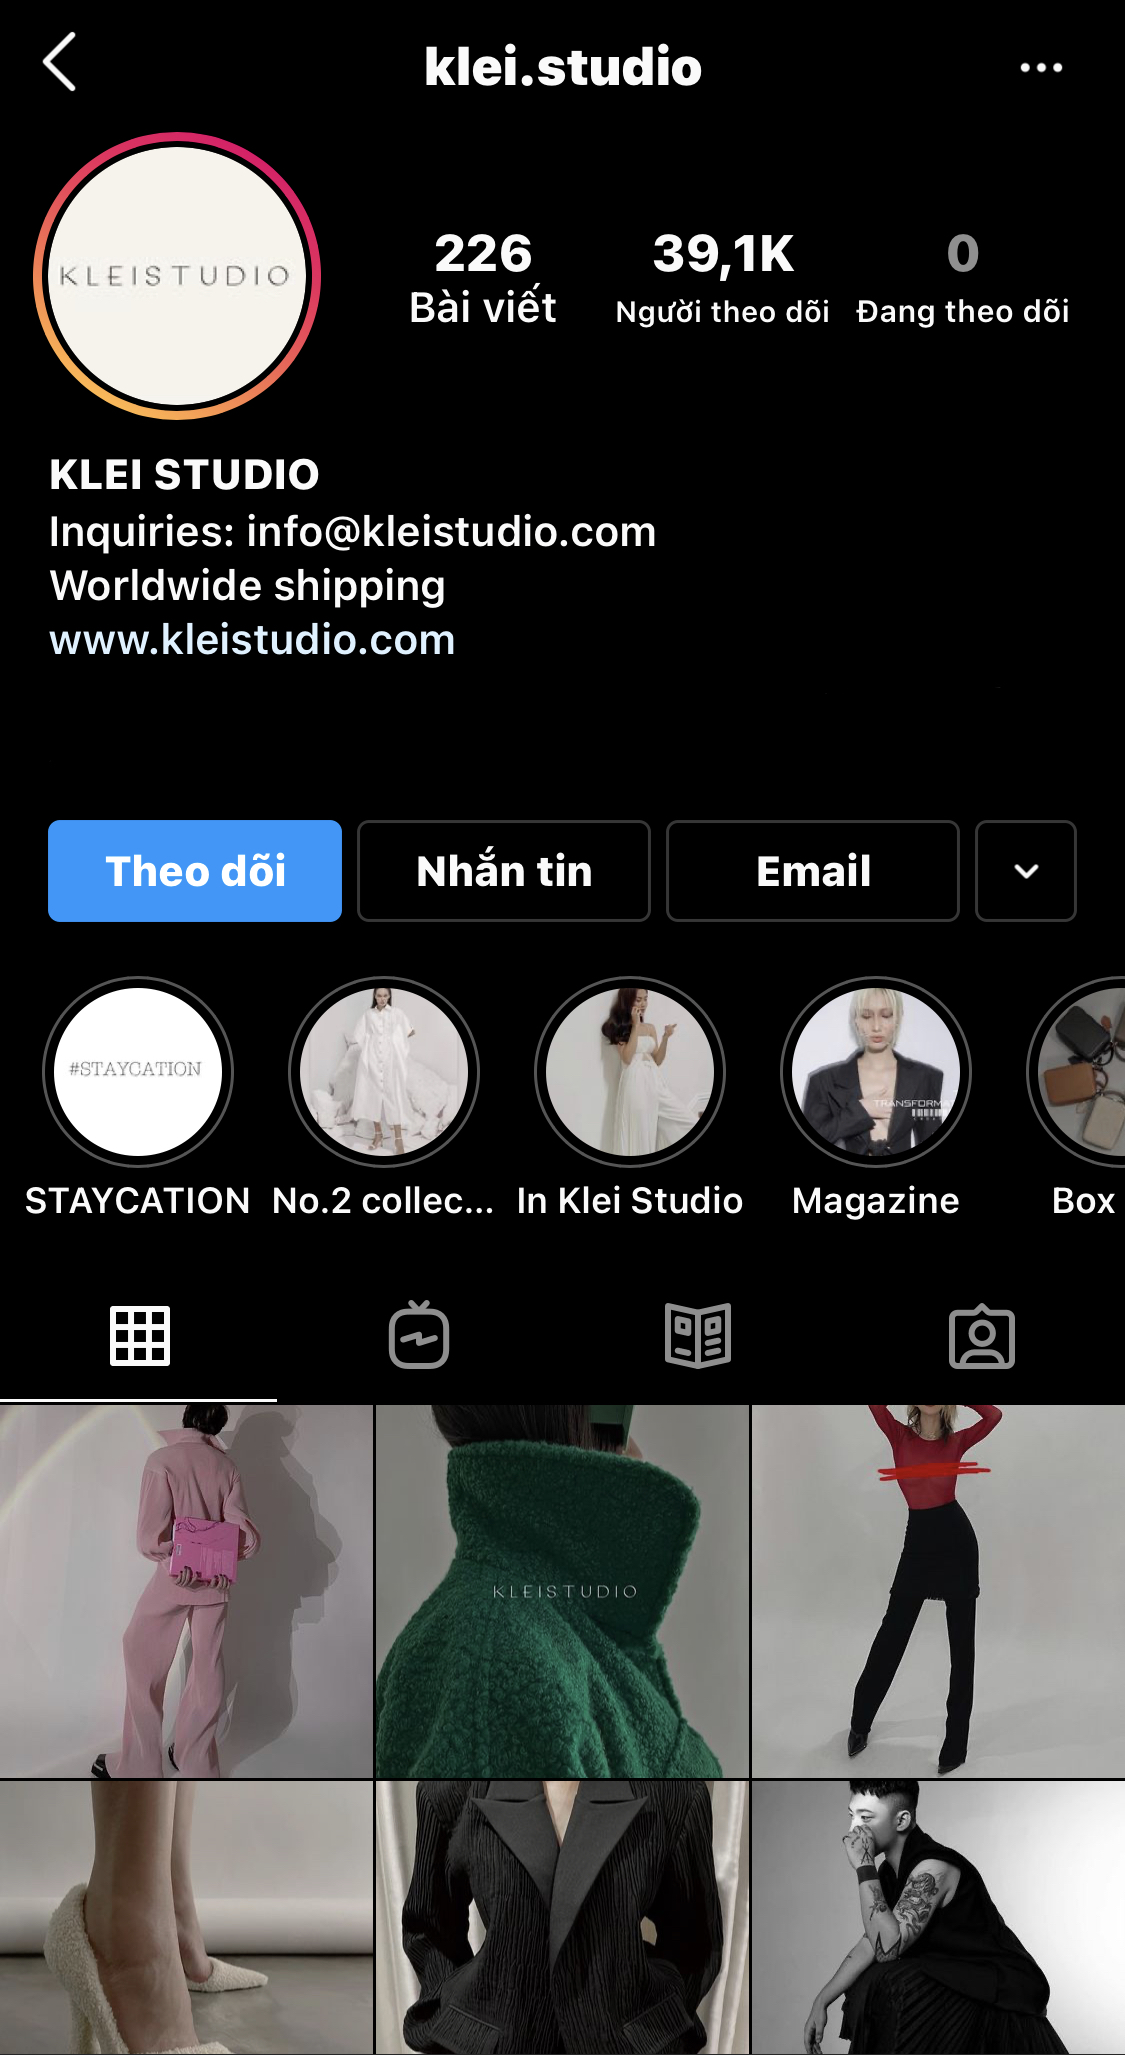 Klei Studio với gần 40 nghìn lượt theo dõi trên Instagram, là thương hiệu nổi bật trong năm 2021.